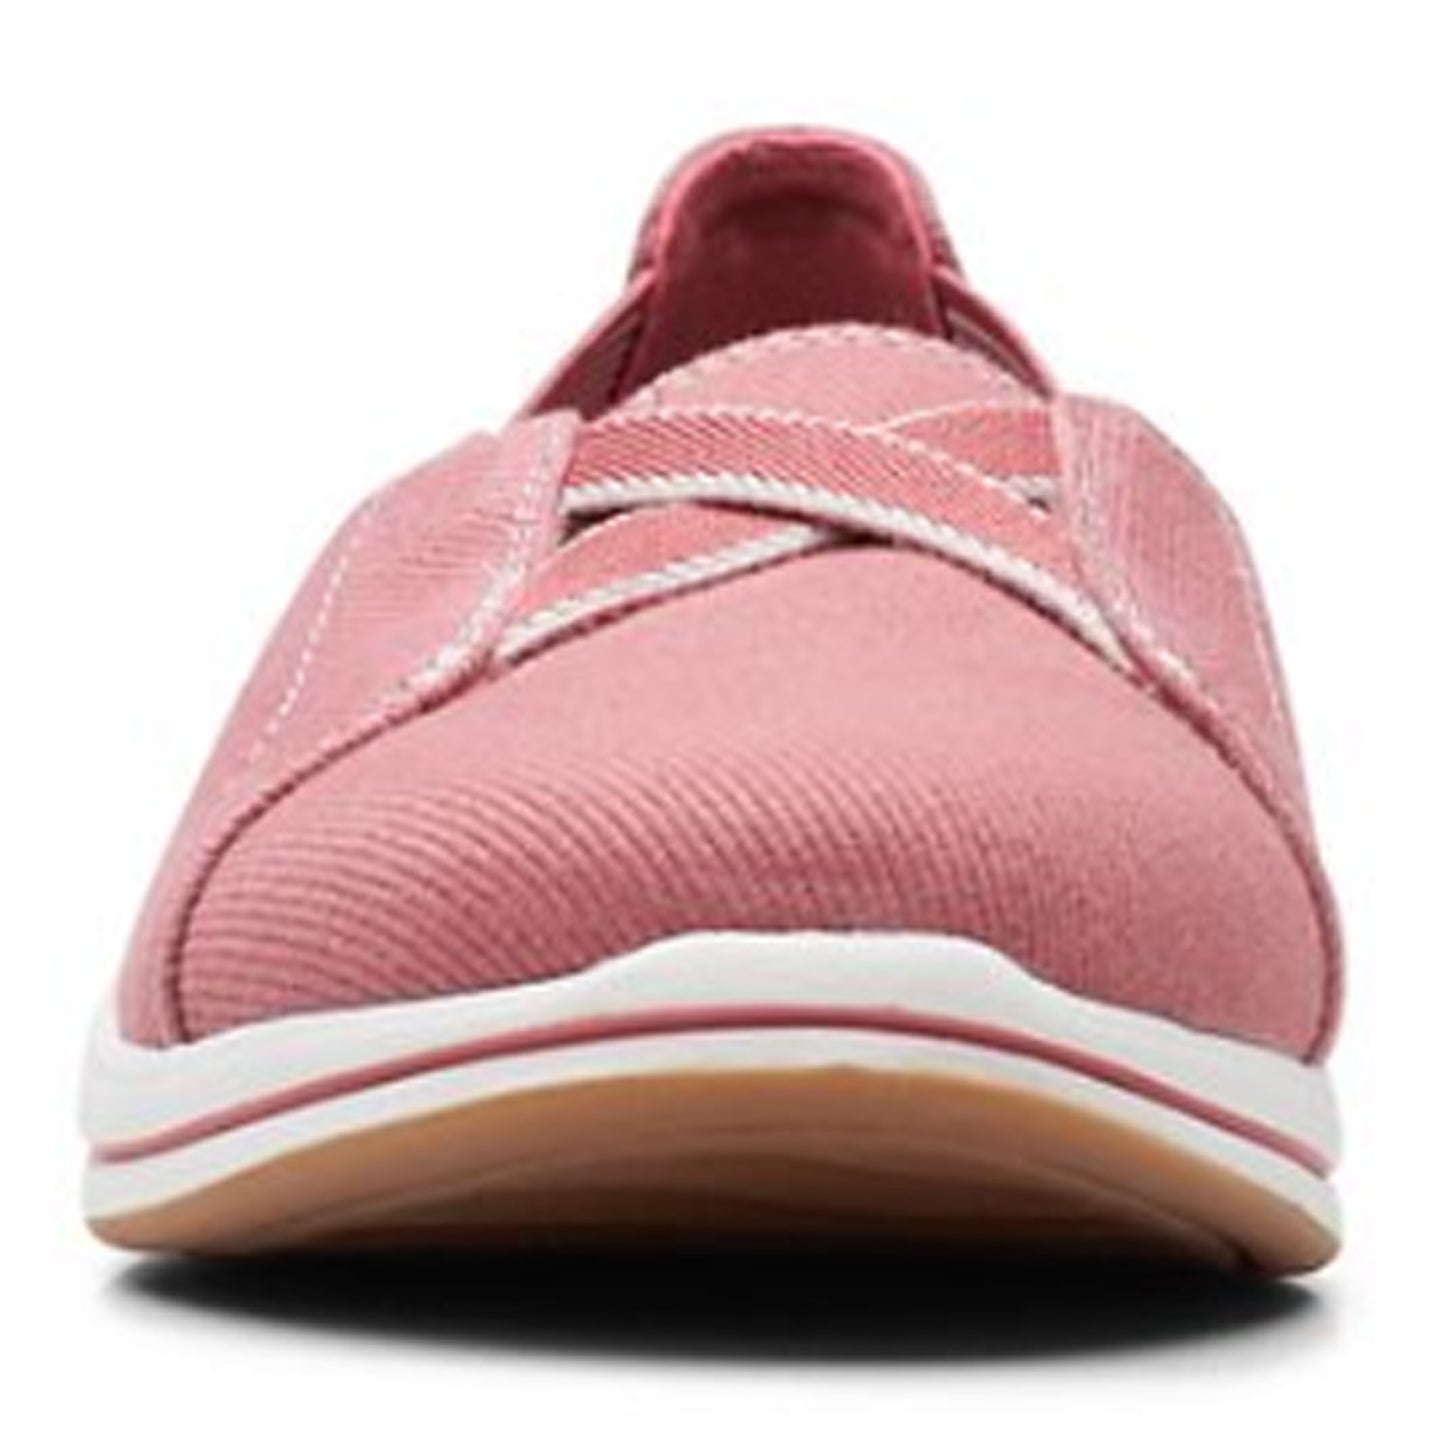 Peltz Shoes  Women's Clarks Breeze Skip Slip-On DUSTY ROSE 26171378